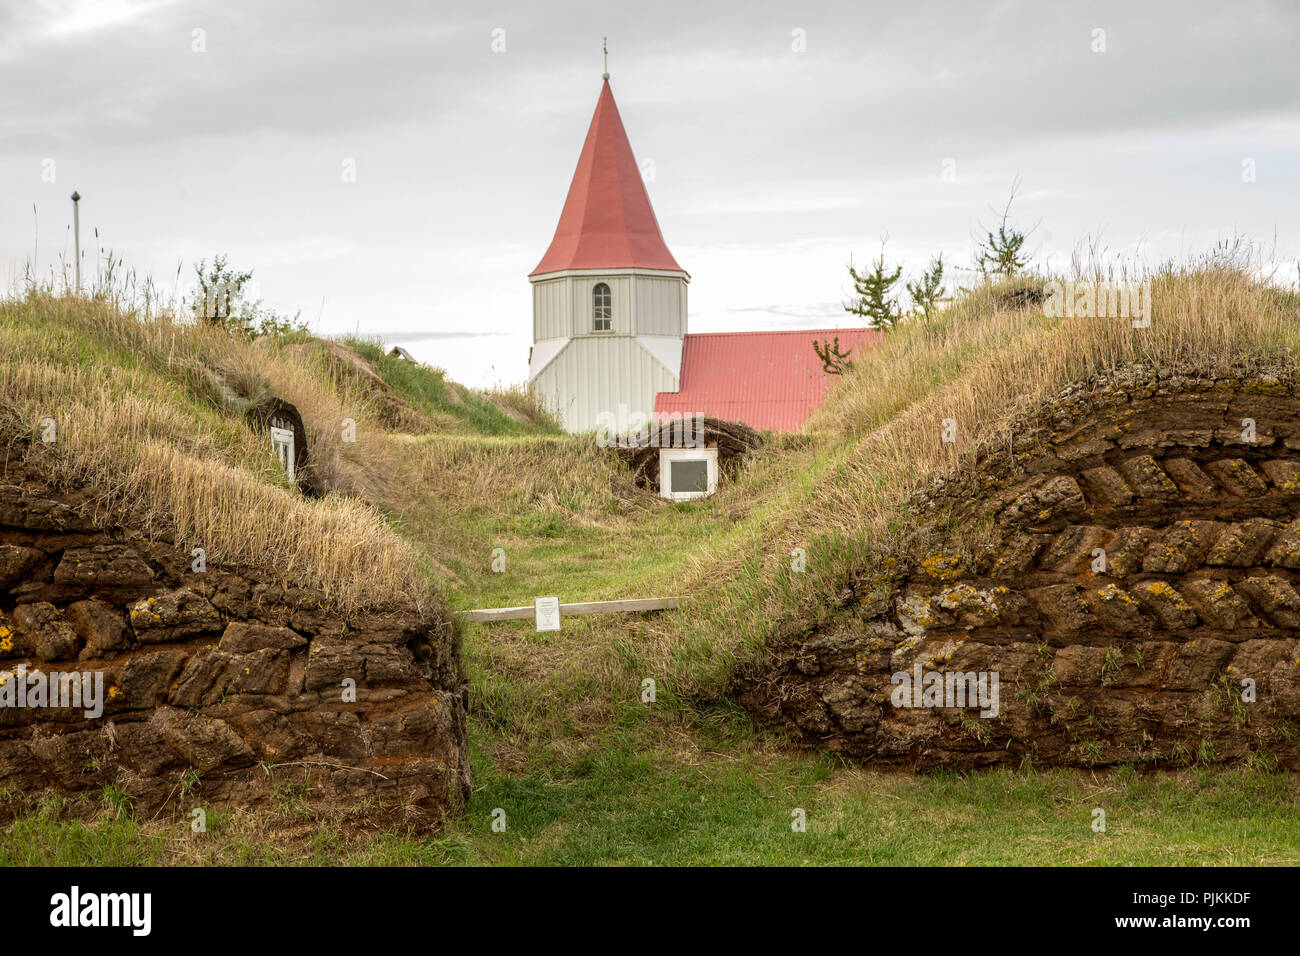 Island, Isländisch, Torfhaus, Museum, die Kirche und die alte Torf Hütten, Grasdach, Ring Road, Stockfoto